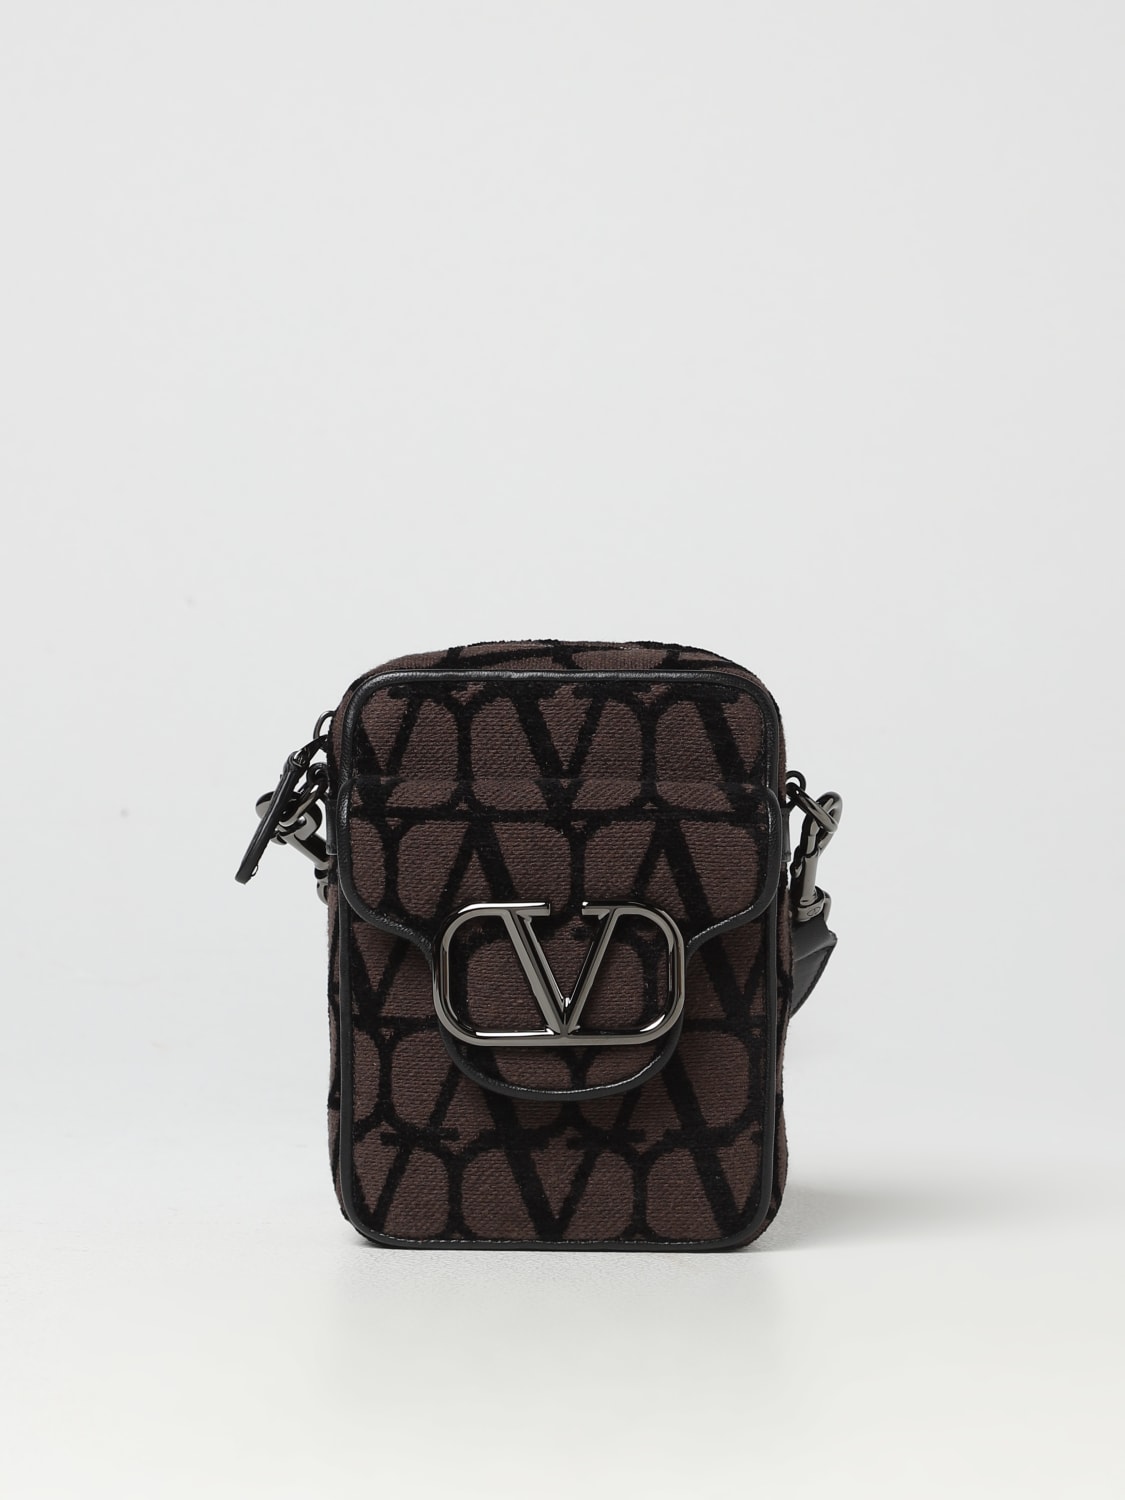 Louis Vuitton Small bags, wallets & cases for Men - Vestiaire